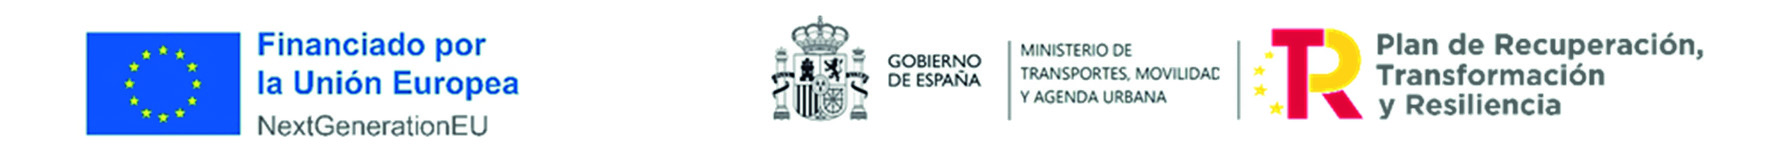 LOGO UNION EUROPEA - GOBIERNO DE ESPAÑA - PLAN DE RECUPERACION, TRANSFORMACION Y RESILIENCIA